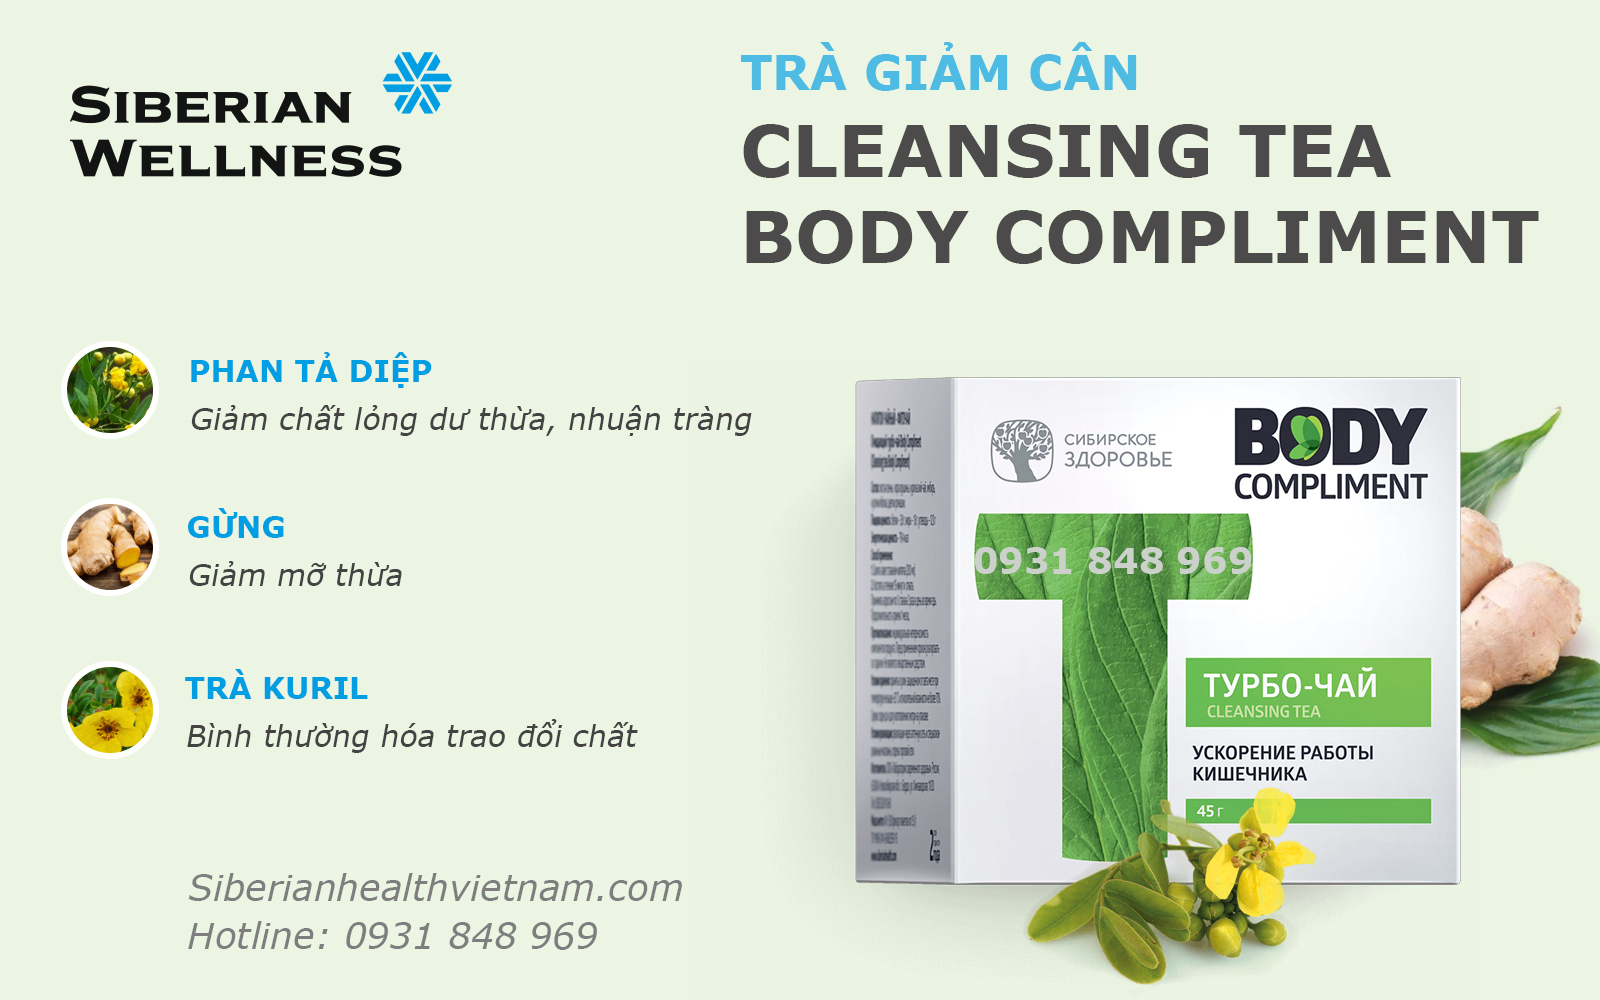 Video giới thiệu trà giảm cân T Body Compliment của Siberian Wellness